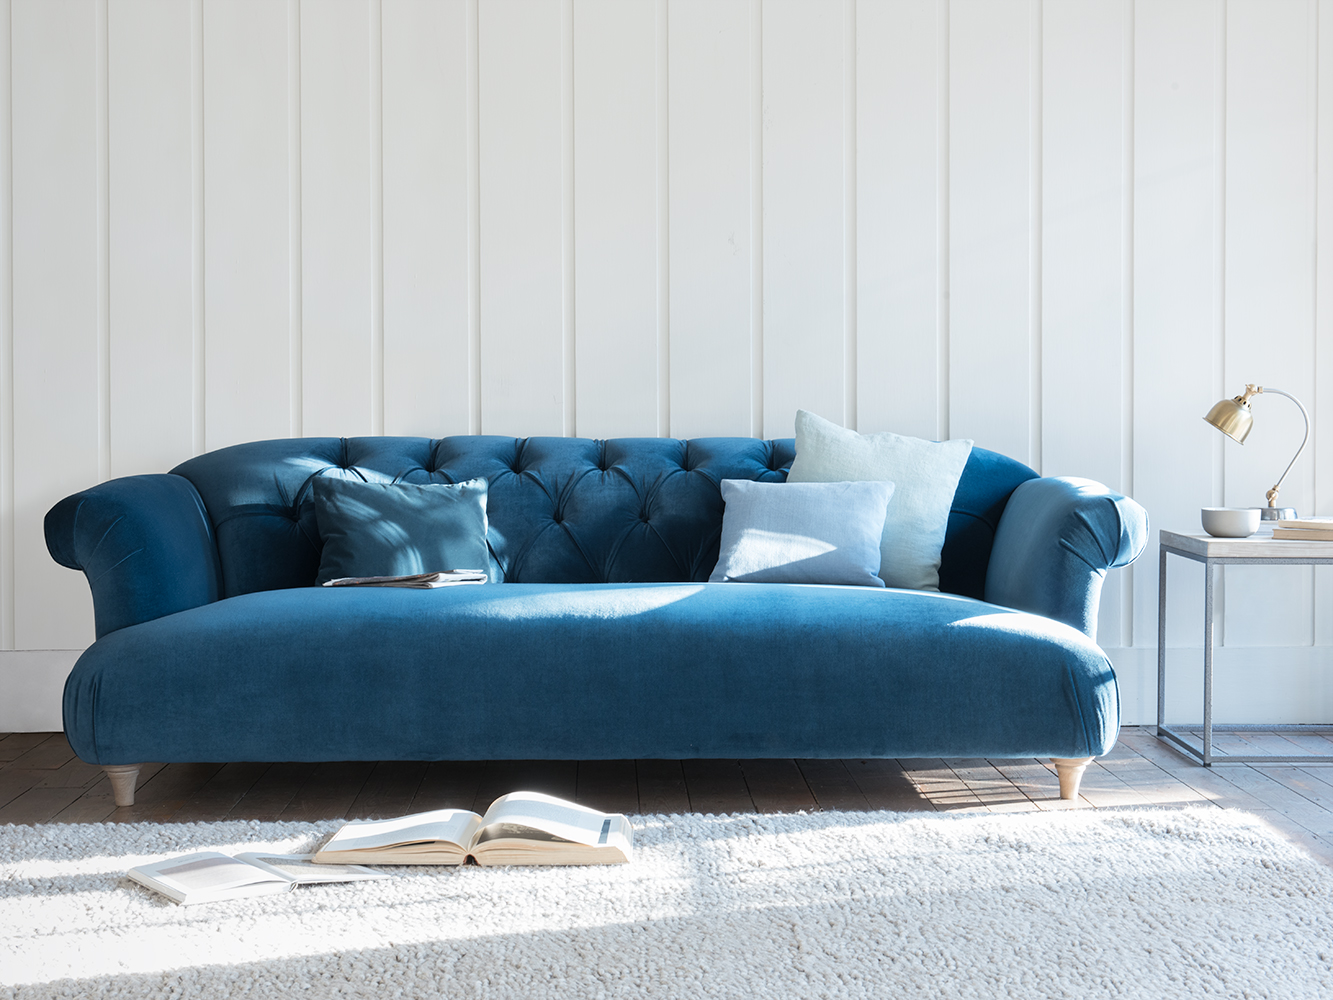 Bọc ghế sofa màu gì để phù hợp với phong thủy?